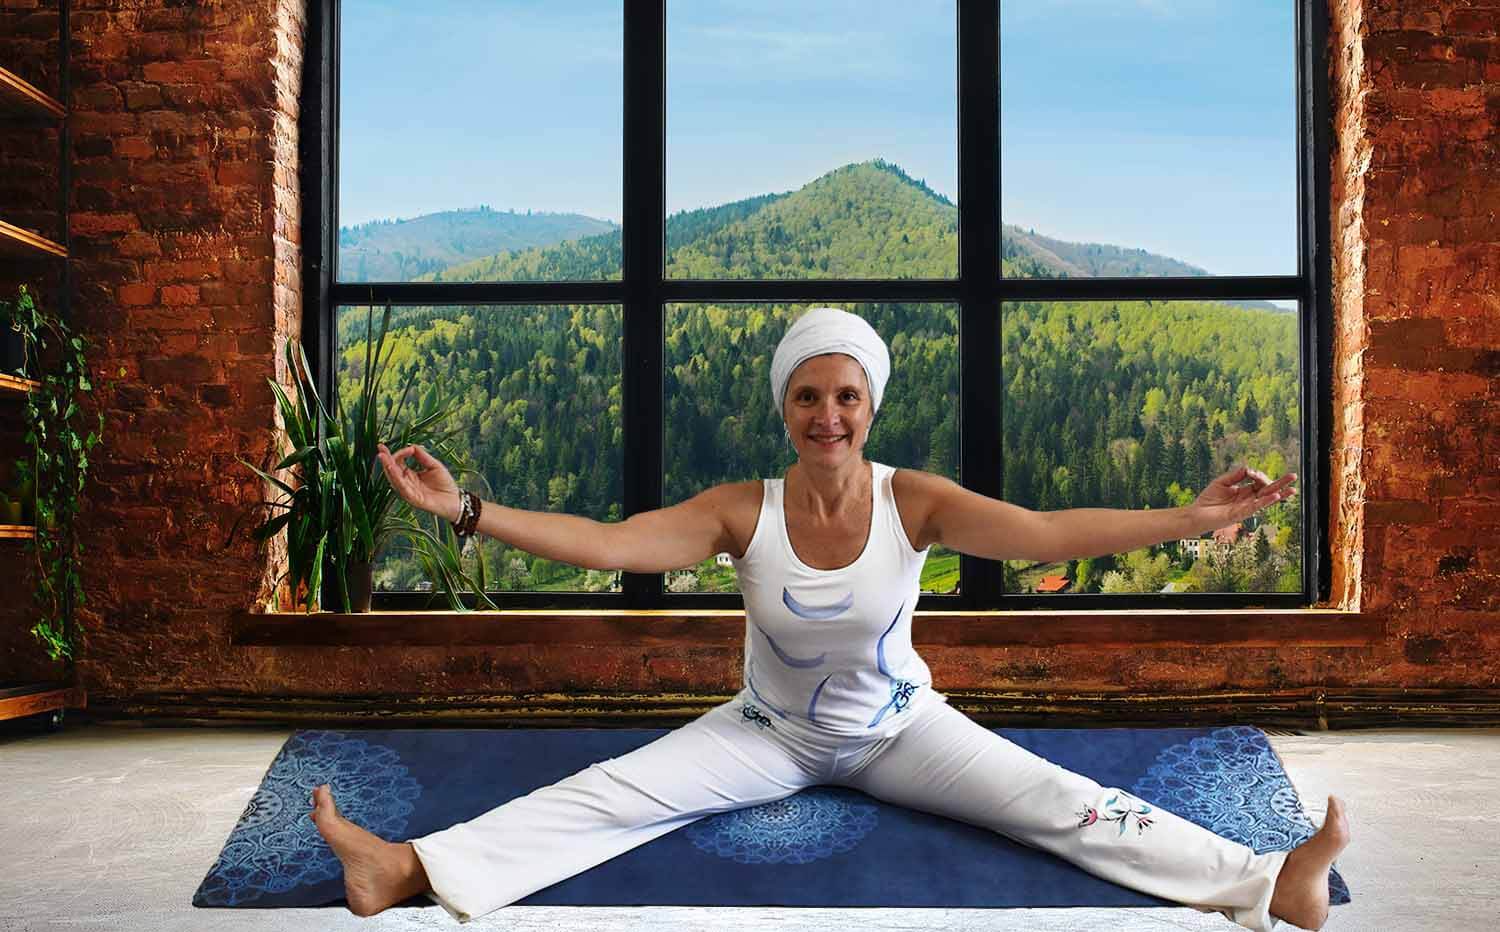 Magasin yoga Montpellier - Combinaison yoga femme Lotus om shanti - Vetement yoga blanc - Yogini en posture Kundalini yoga sur un tapis de yoga pliable - vu sur la montagne - Achamana